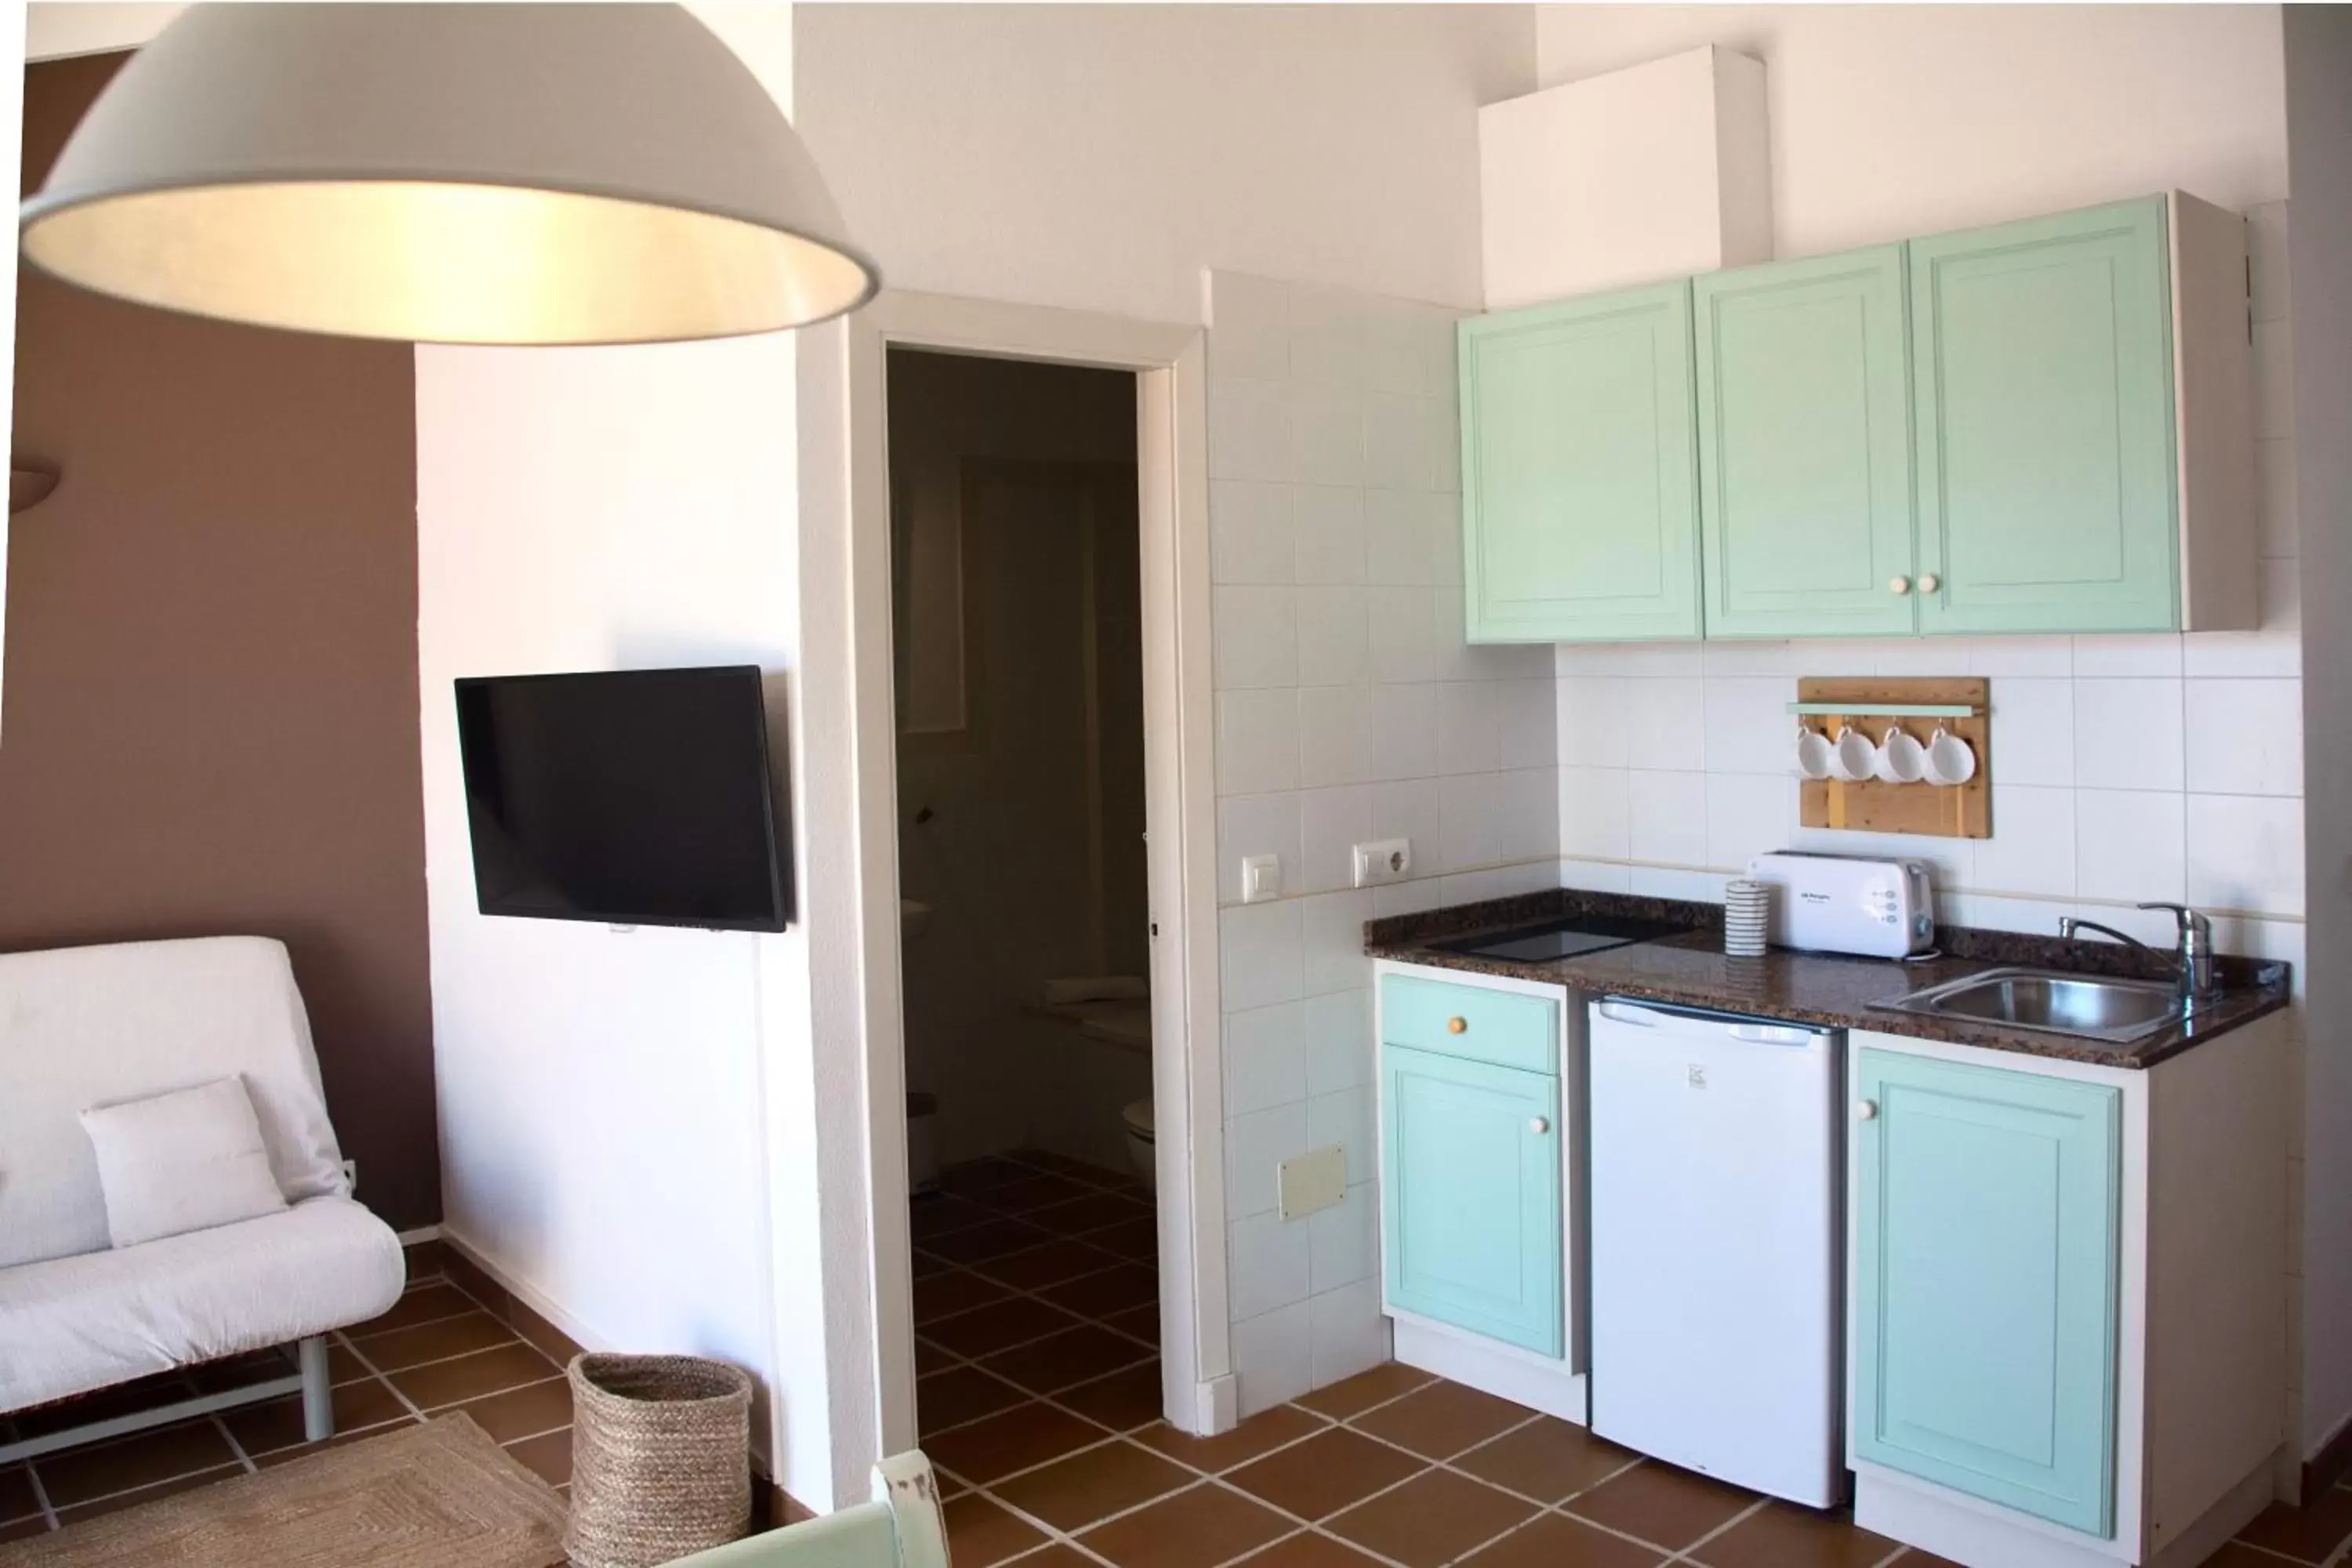 Kitchen or kitchenette, Kitchen/Kitchenette in Nuramar Resort & Villas